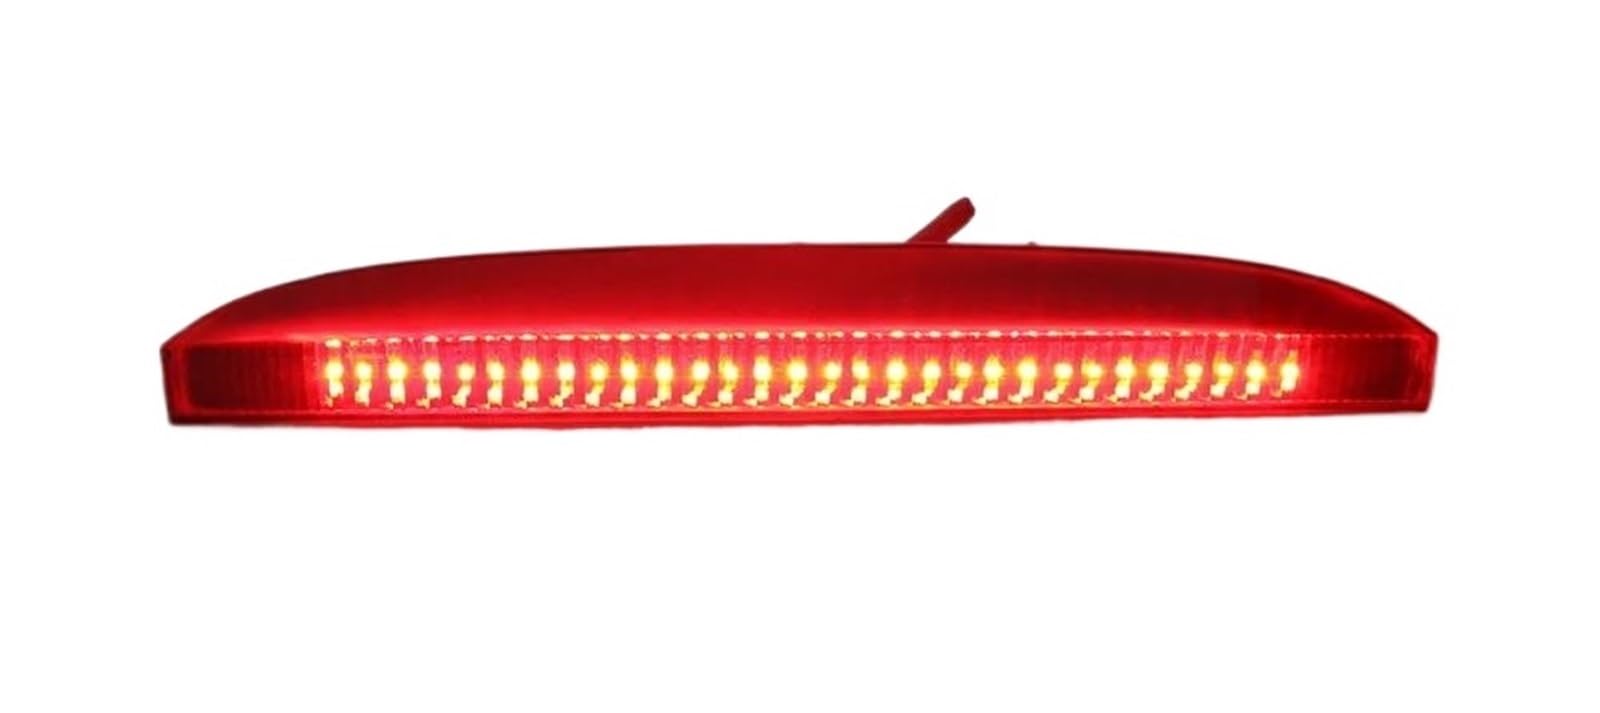 VVKFTP Auto Zusatzbremsleuchten 7700410753 Rotes drittes Bremslicht fürs Auto mittig hoch montiert automatisches Bremslicht getönte rote Linse für R&enault für Clio II MK2 1998-2005 (Red Lens) von VVKFTP